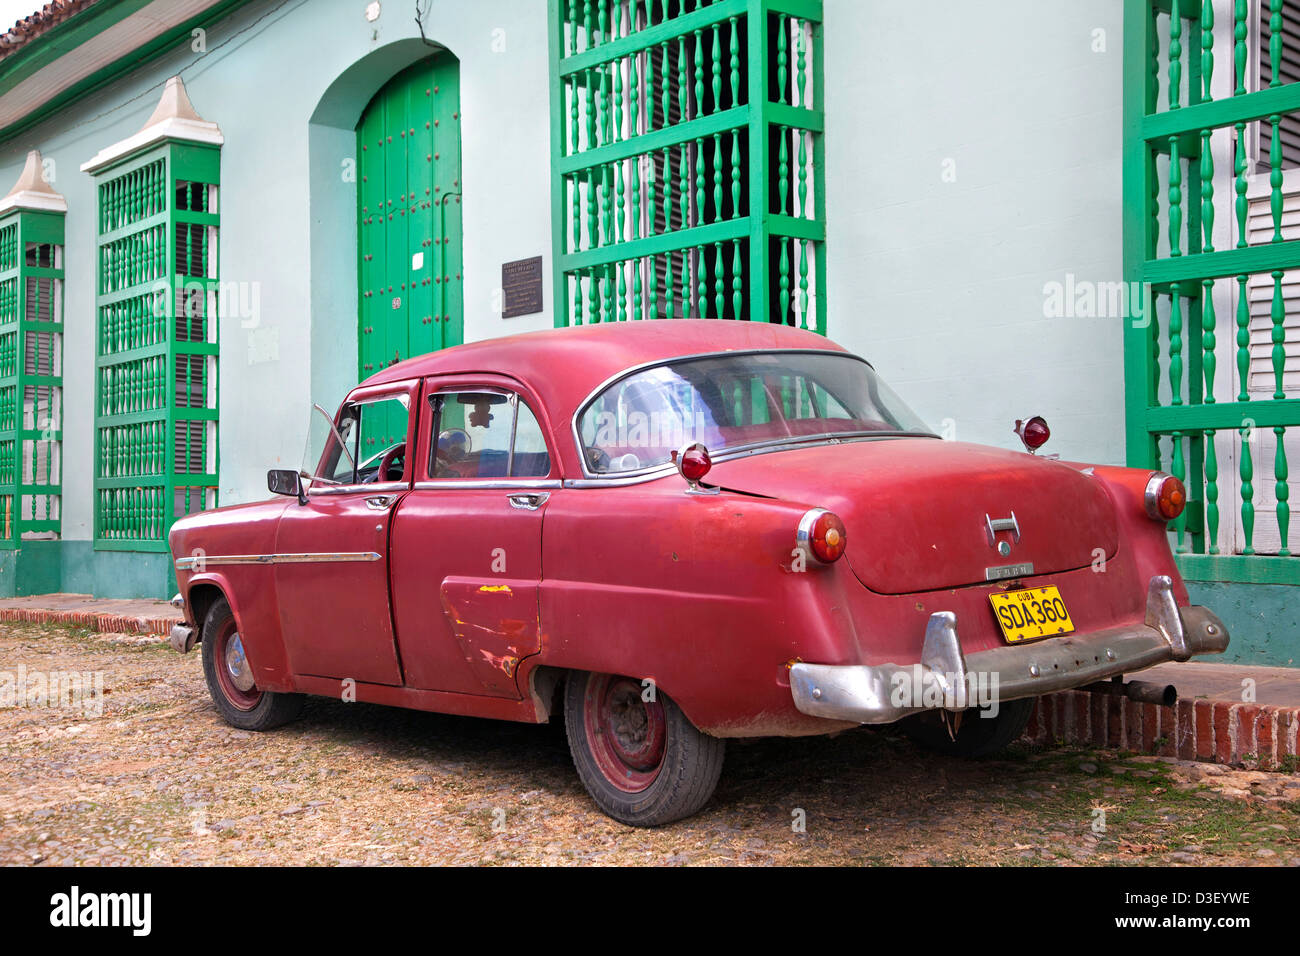 Le case dai colori pastello con barrotes e vecchi degli anni cinquanta vintage americano auto / Yank serbatoio in Trinidad, Cuba, Caraibi Foto Stock